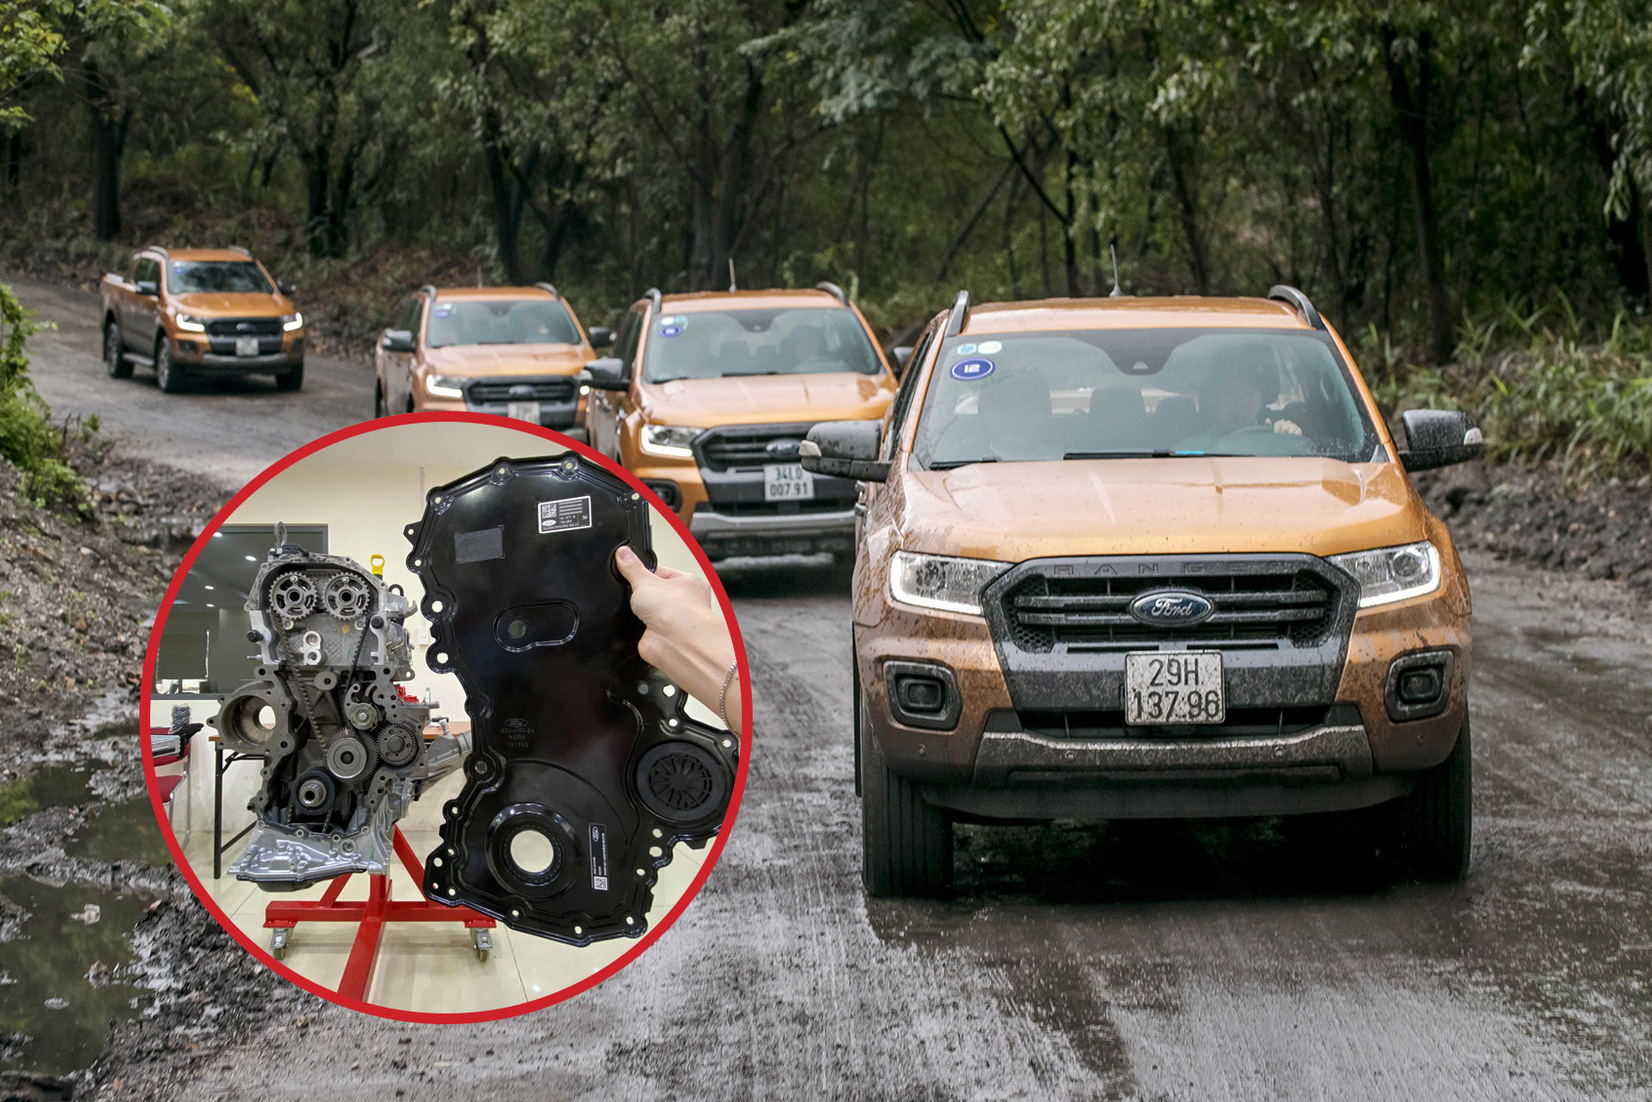 Hiểu đúng về hiện tượng ngấm/rò rỉ dầu trên SUV và bán tải Ford tại Việt Nam